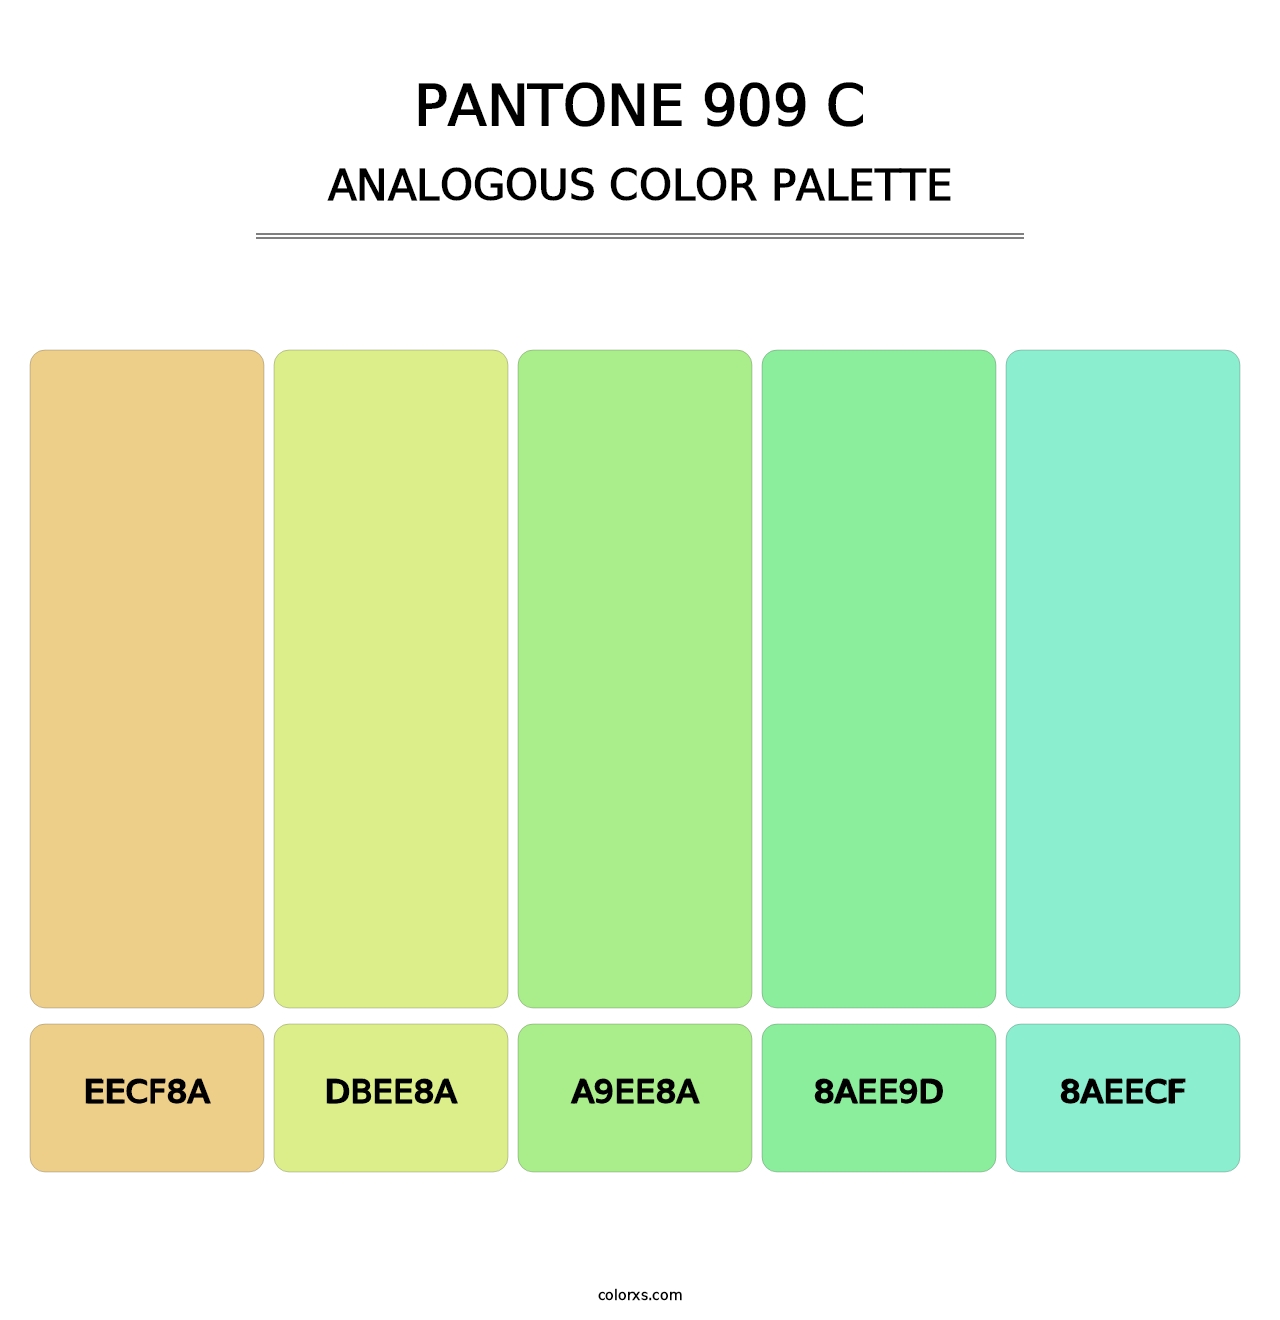 PANTONE 909 C - Analogous Color Palette